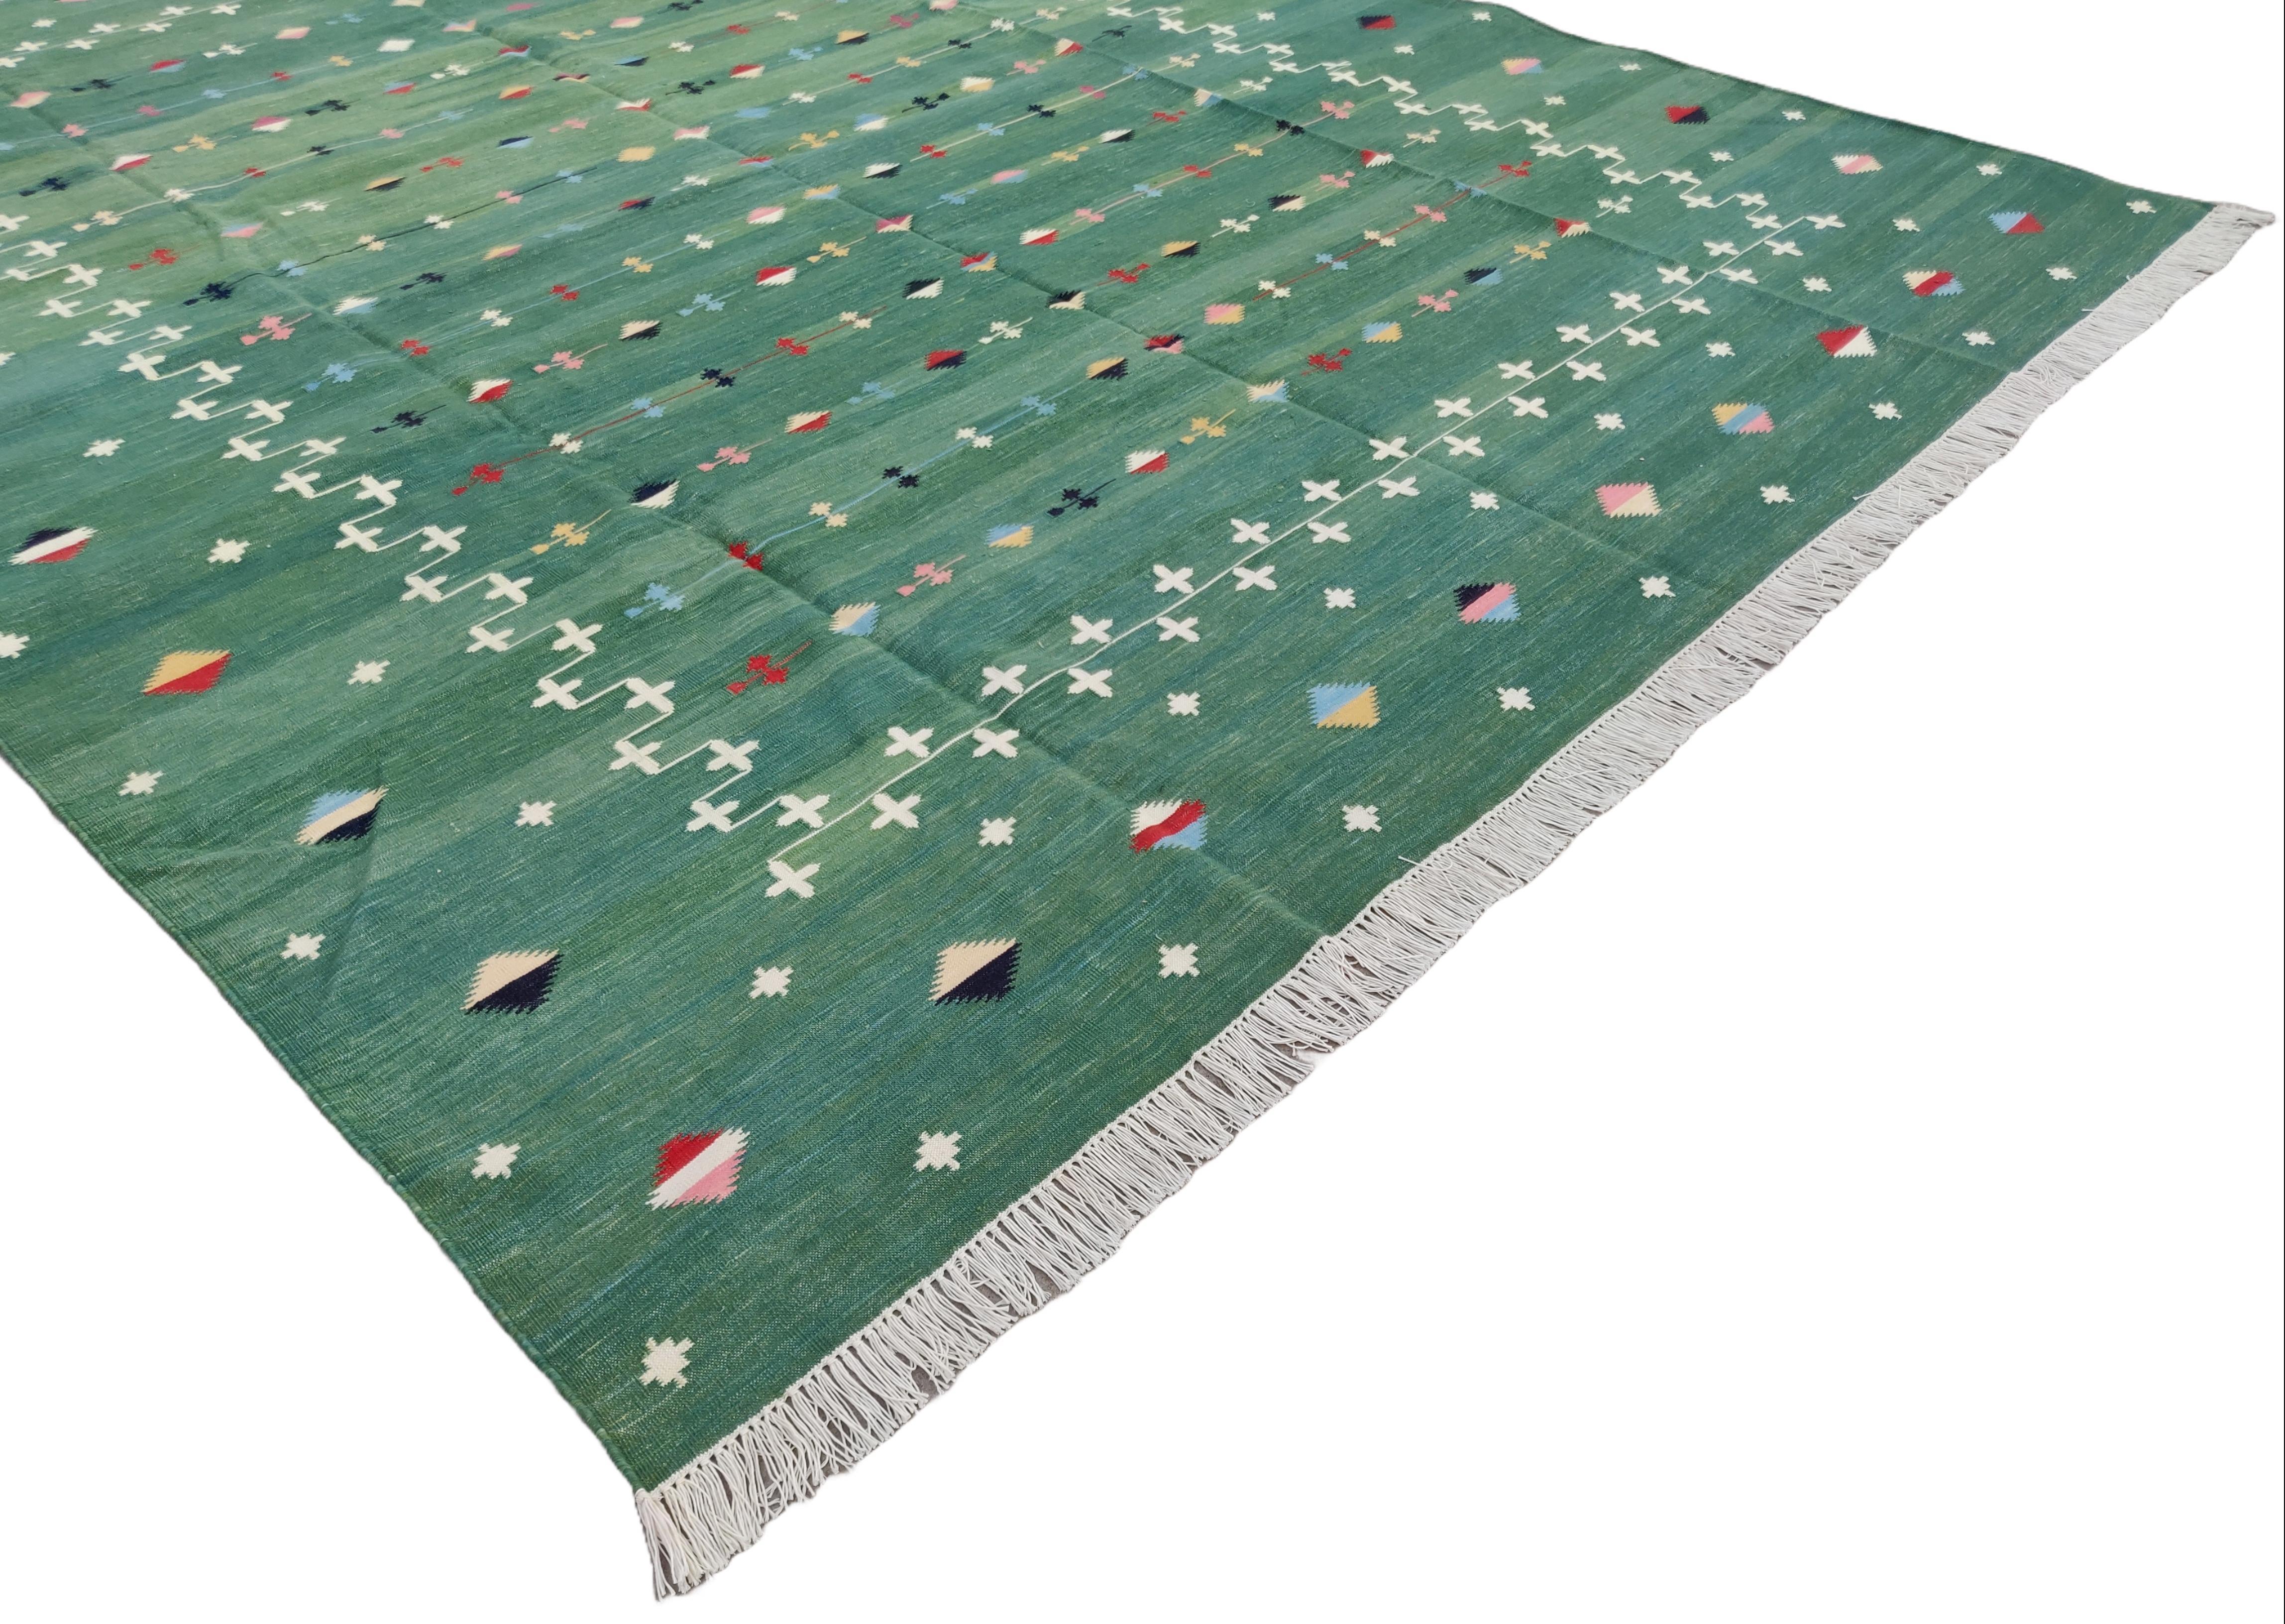 Baumwolle pflanzlich gefärbt Waldgrün Shooting Star Teppich-6'x9'
Diese speziellen flachgewebten Dhurries werden aus 15-fachem Garn aus 100% Baumwolle handgewebt. Aufgrund der speziellen Fertigungstechniken, die zur Herstellung unserer Teppiche